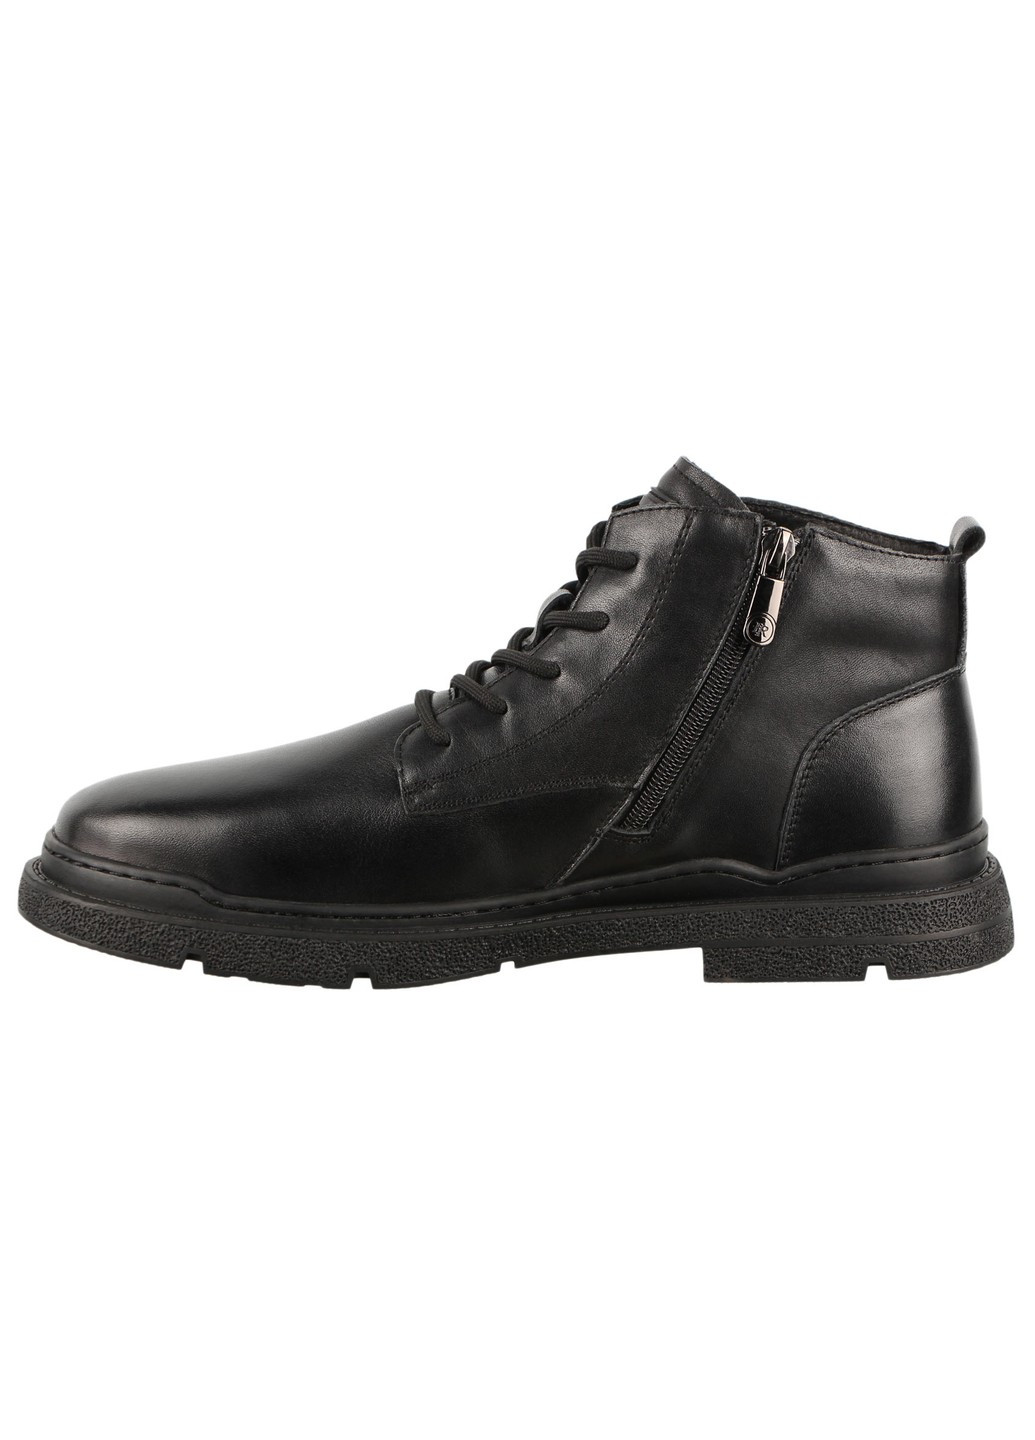 Черные зимние мужские ботинки 198529 Berisstini